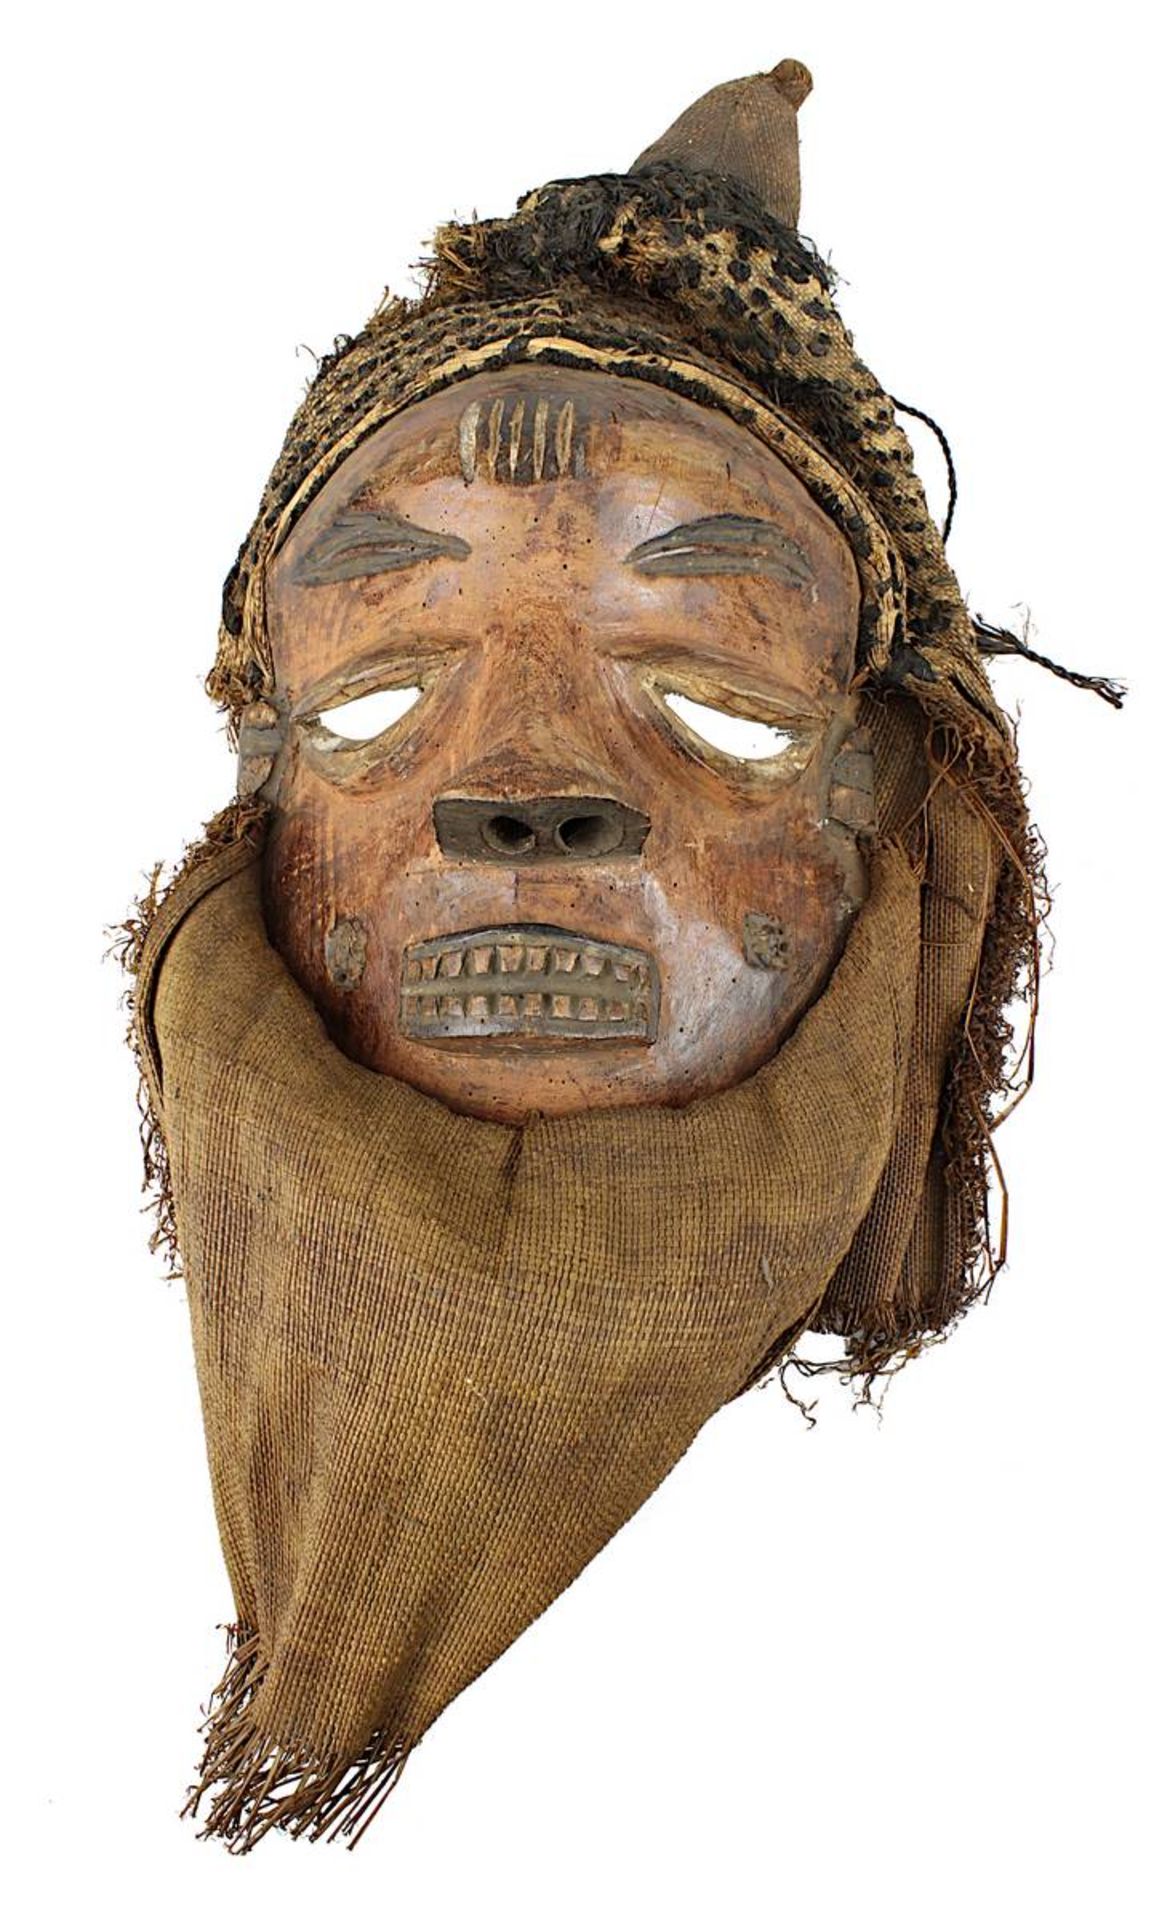 Maske "Mbuya", Pende, D. R. Kongo, weibliche Maske mit gesenkten Lidern und Ziernarben, helles Holz 